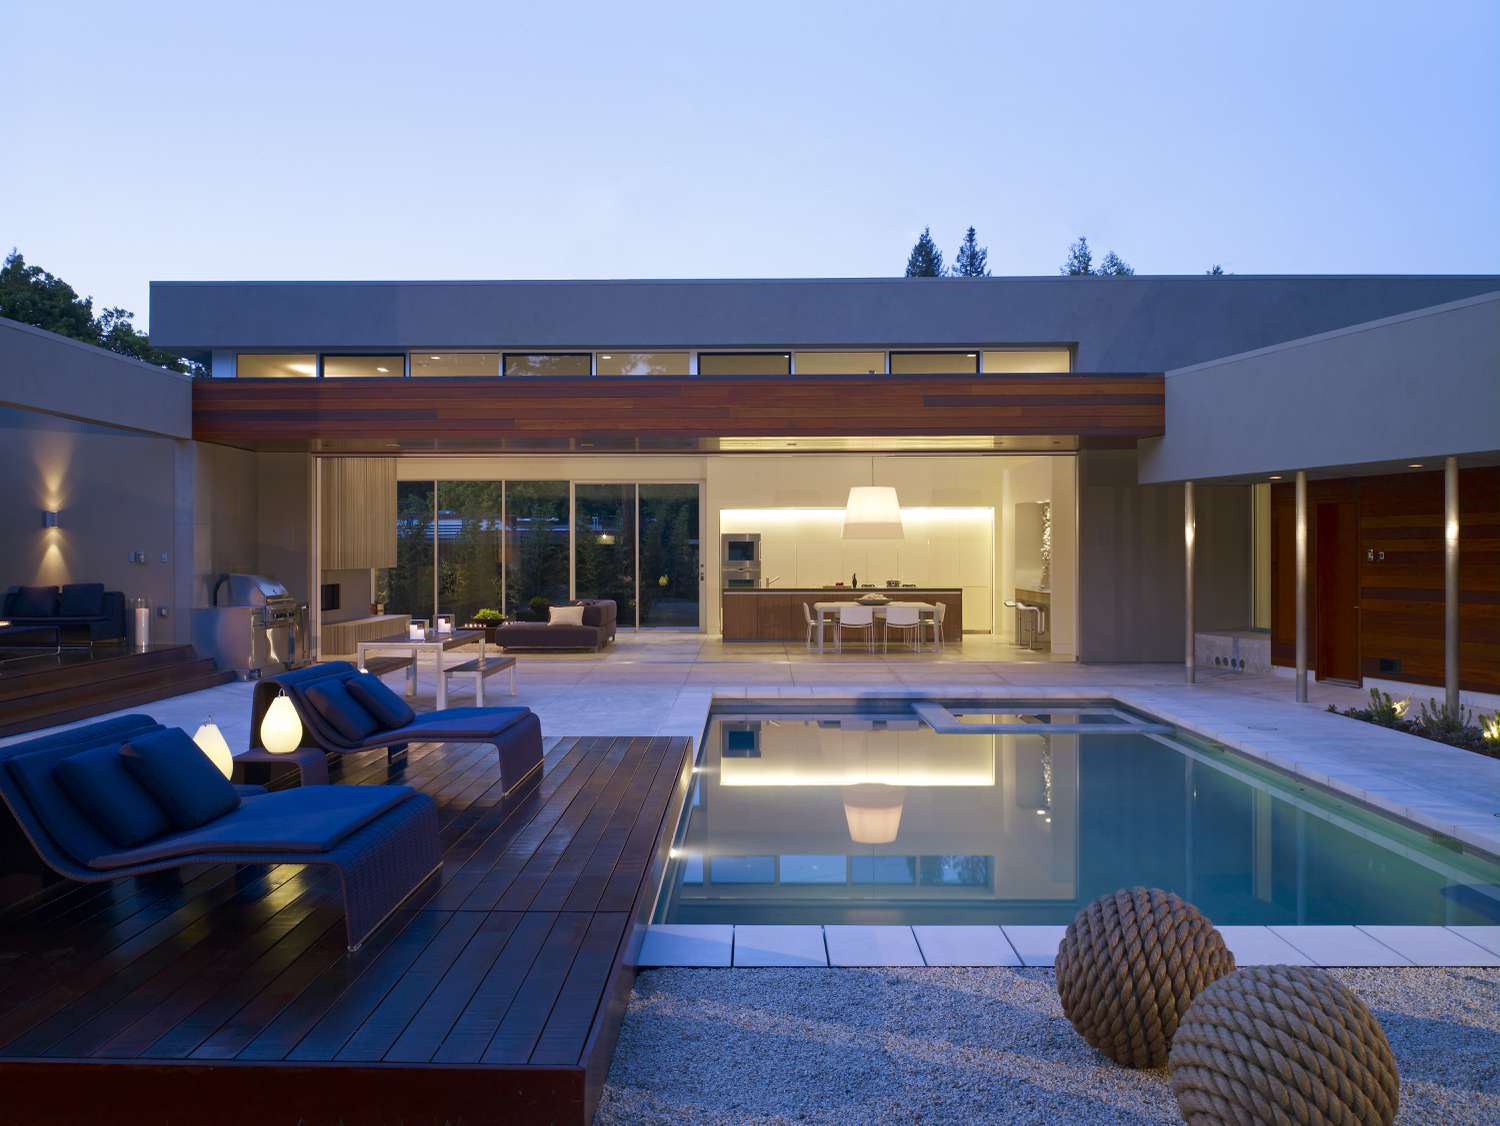 Casa moderna com deck de piscina de material misto.